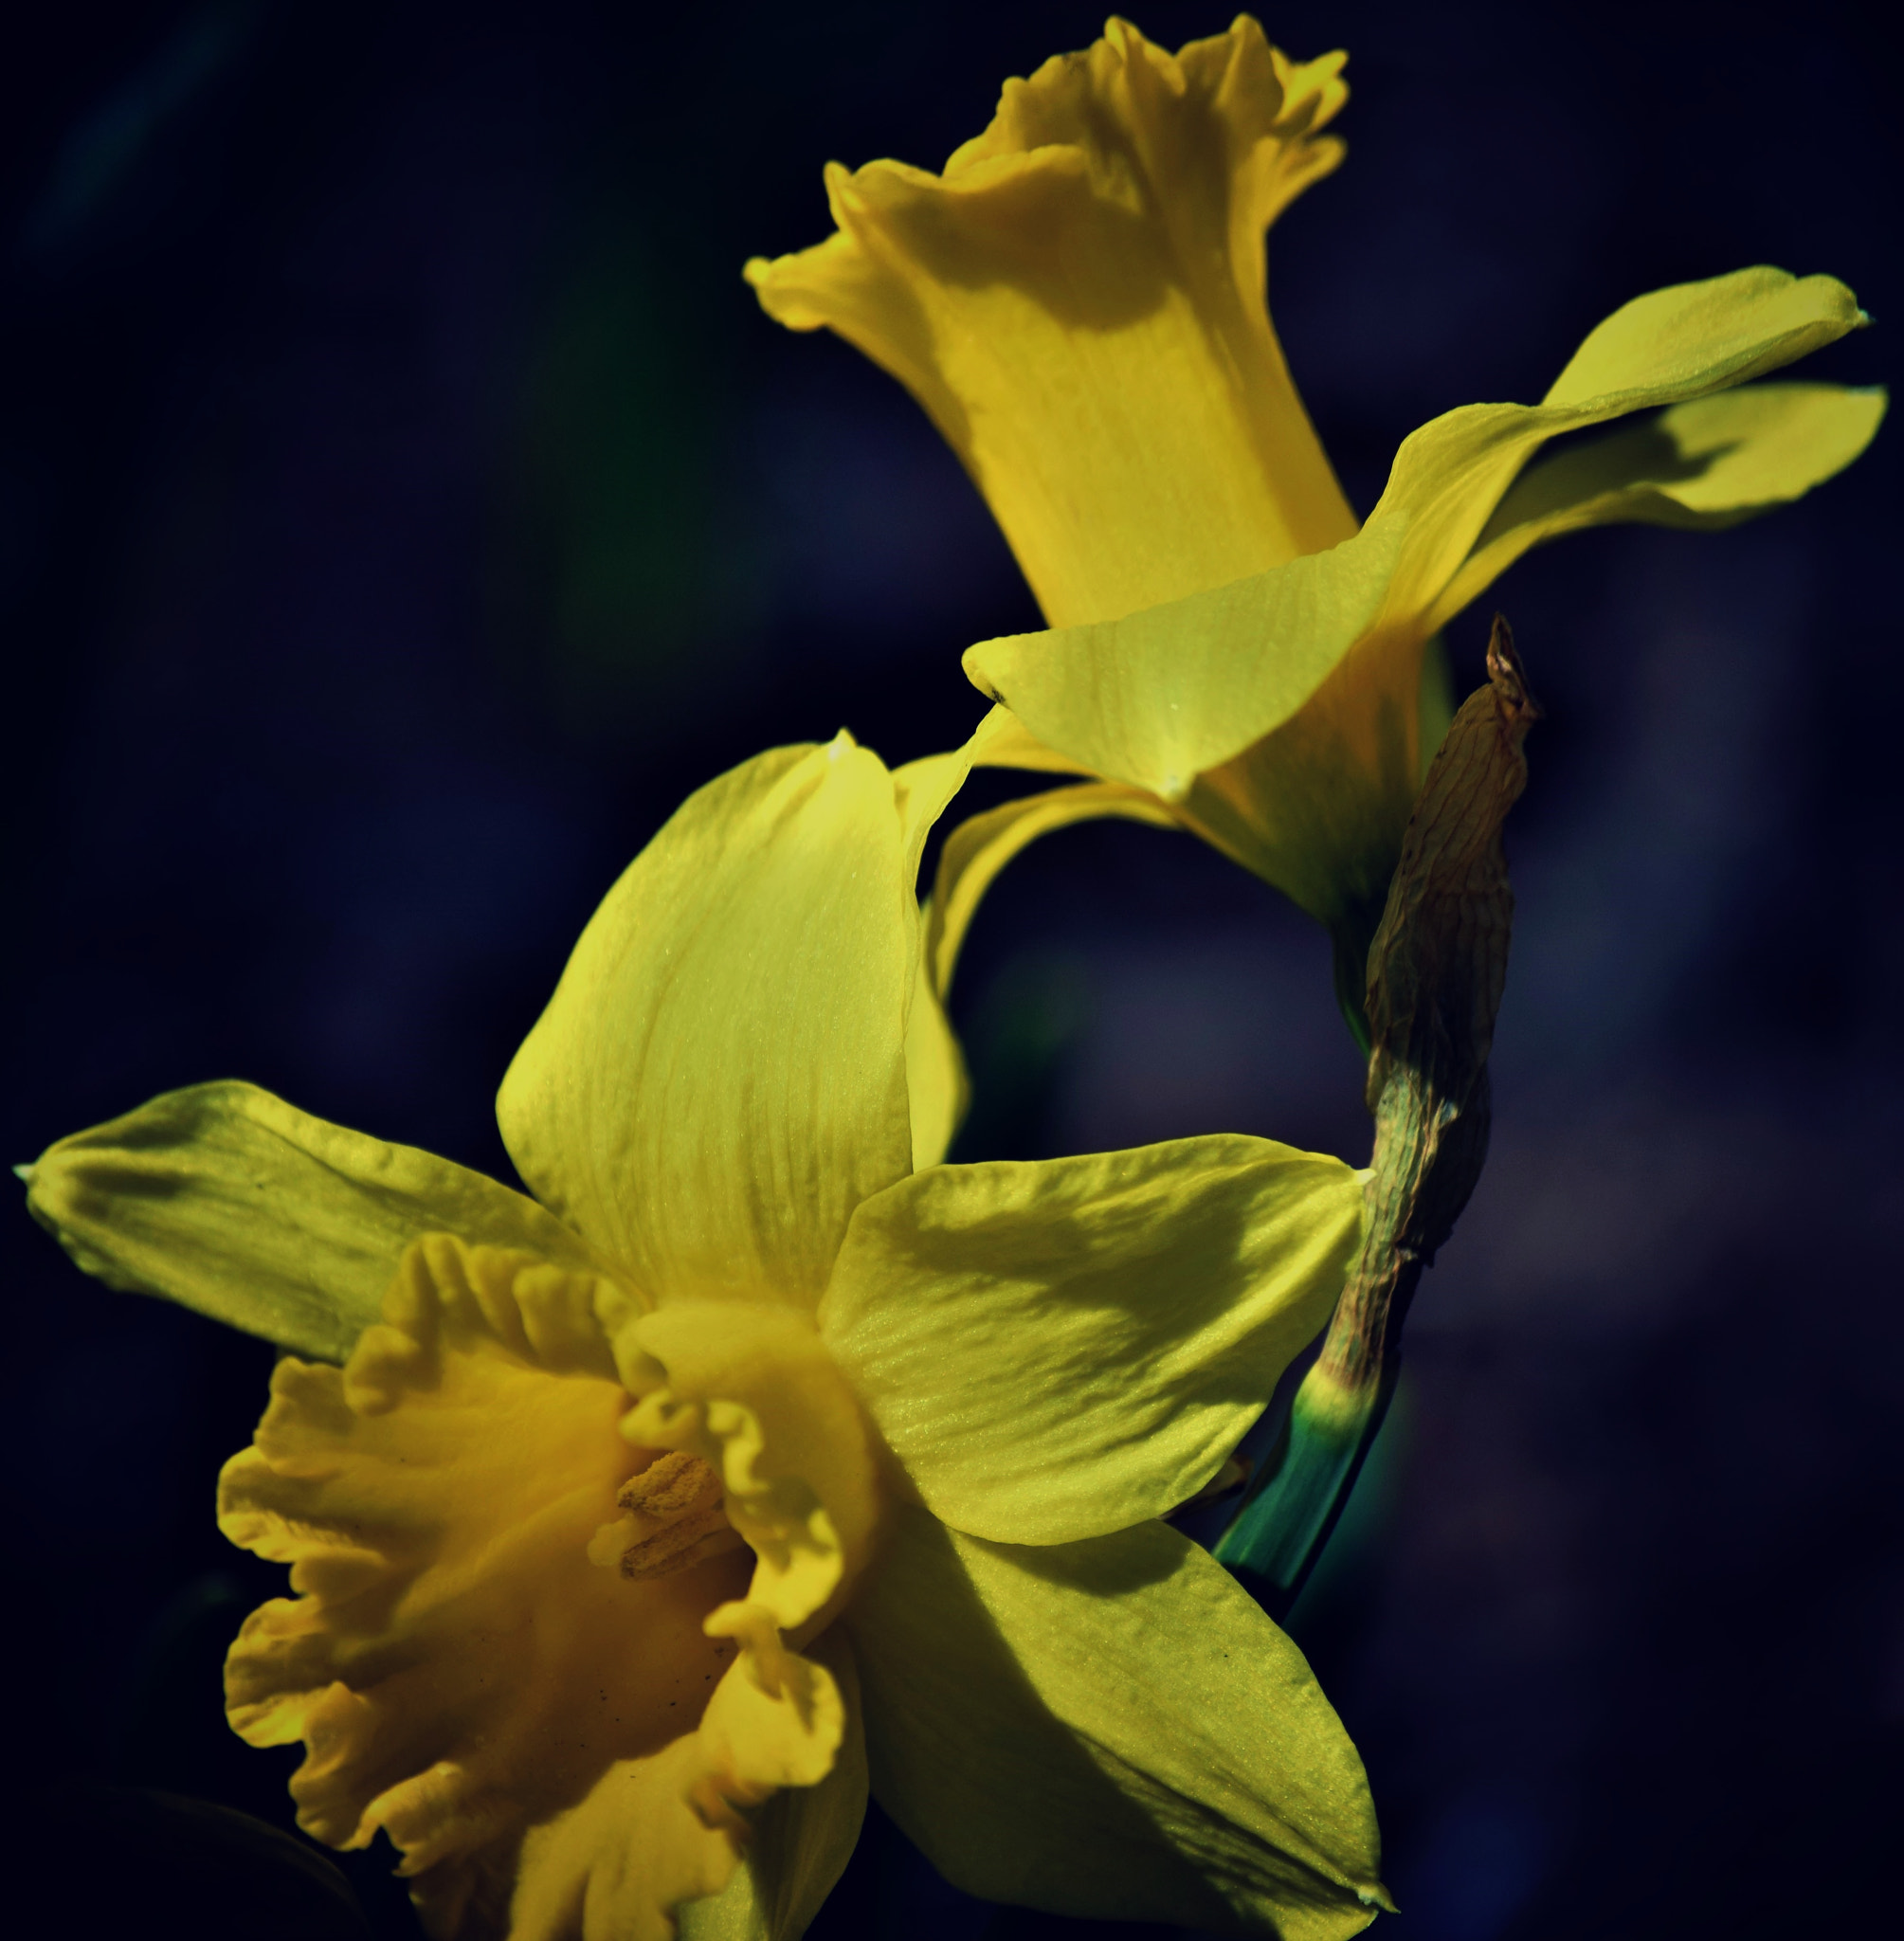 Nikon D5300 + Nikon AF-S DX Nikkor 55-200mm F4-5.6G VR sample photo. "a host of golden daffodils..." photography